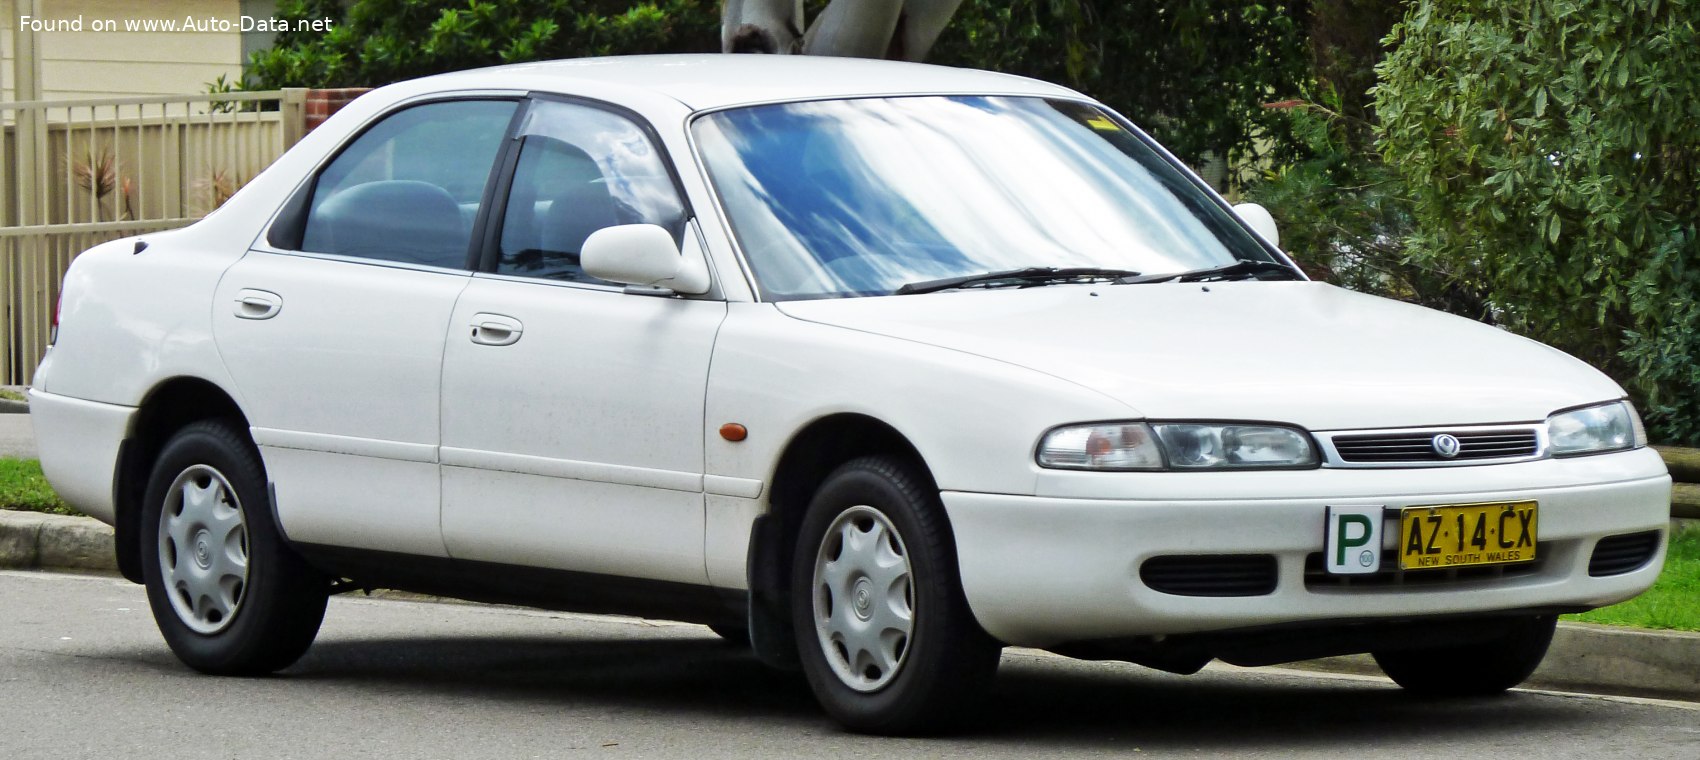 1992 Mazda 626 IV (GE) 2.0i (115 CV) Ficha técnica y